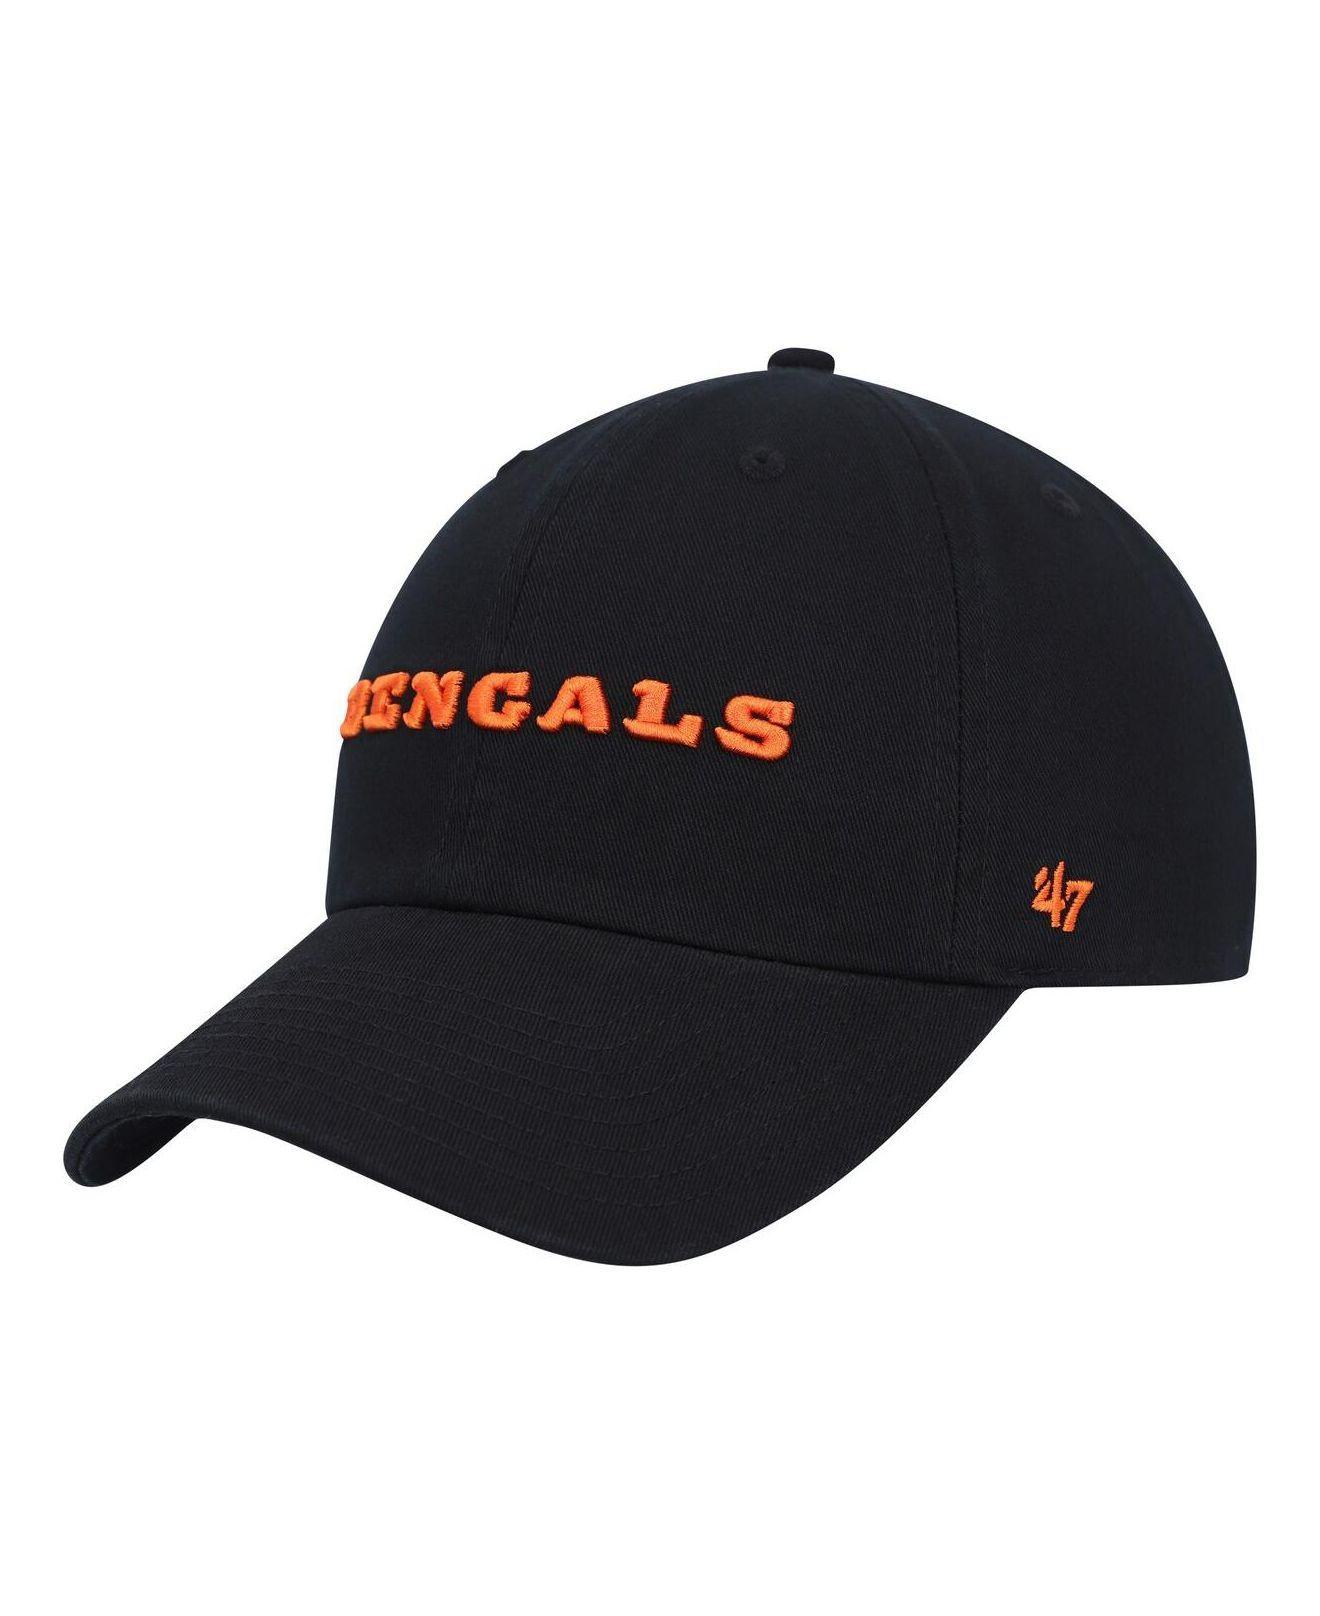 47 bengals hat